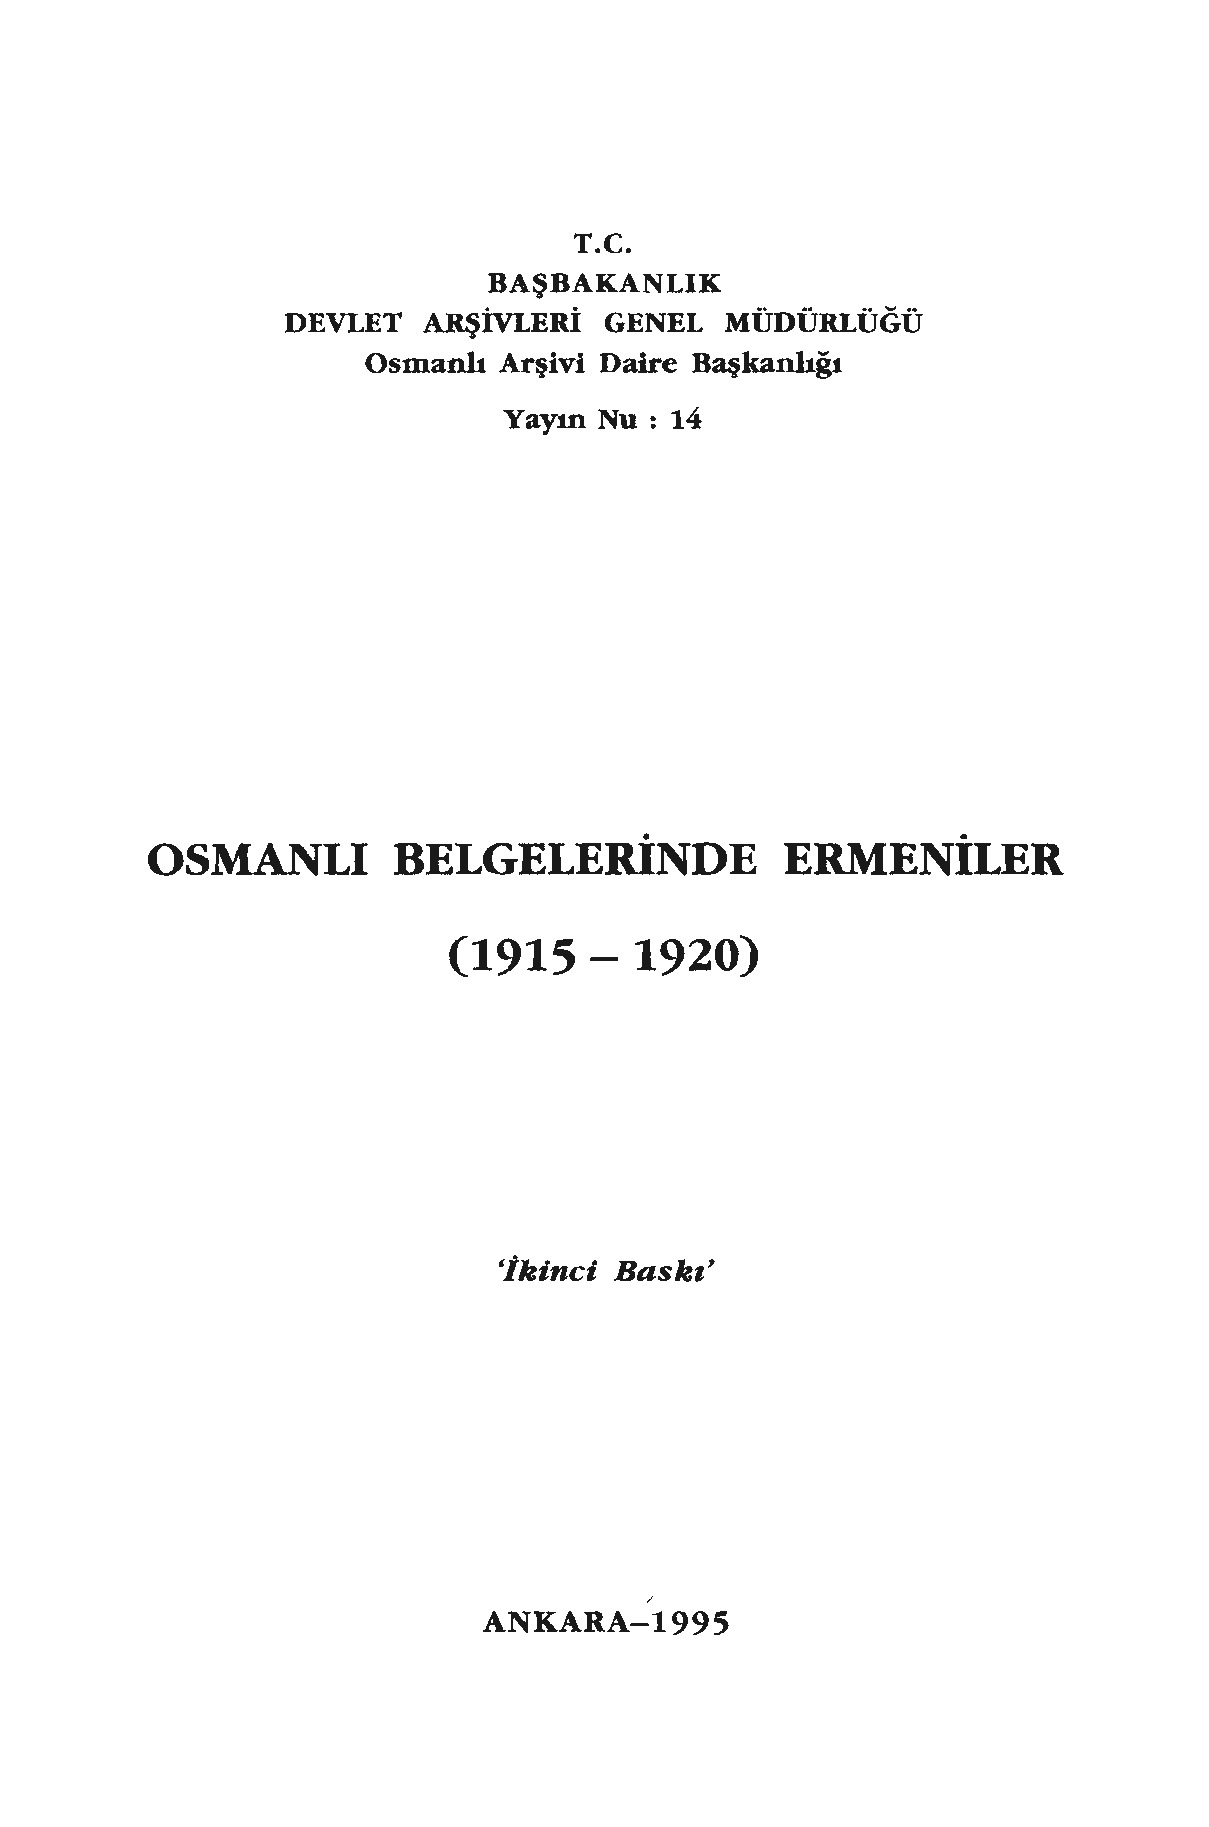 Osmanlı Belgelerinde Ermeniler 1915-1920-1995-707s